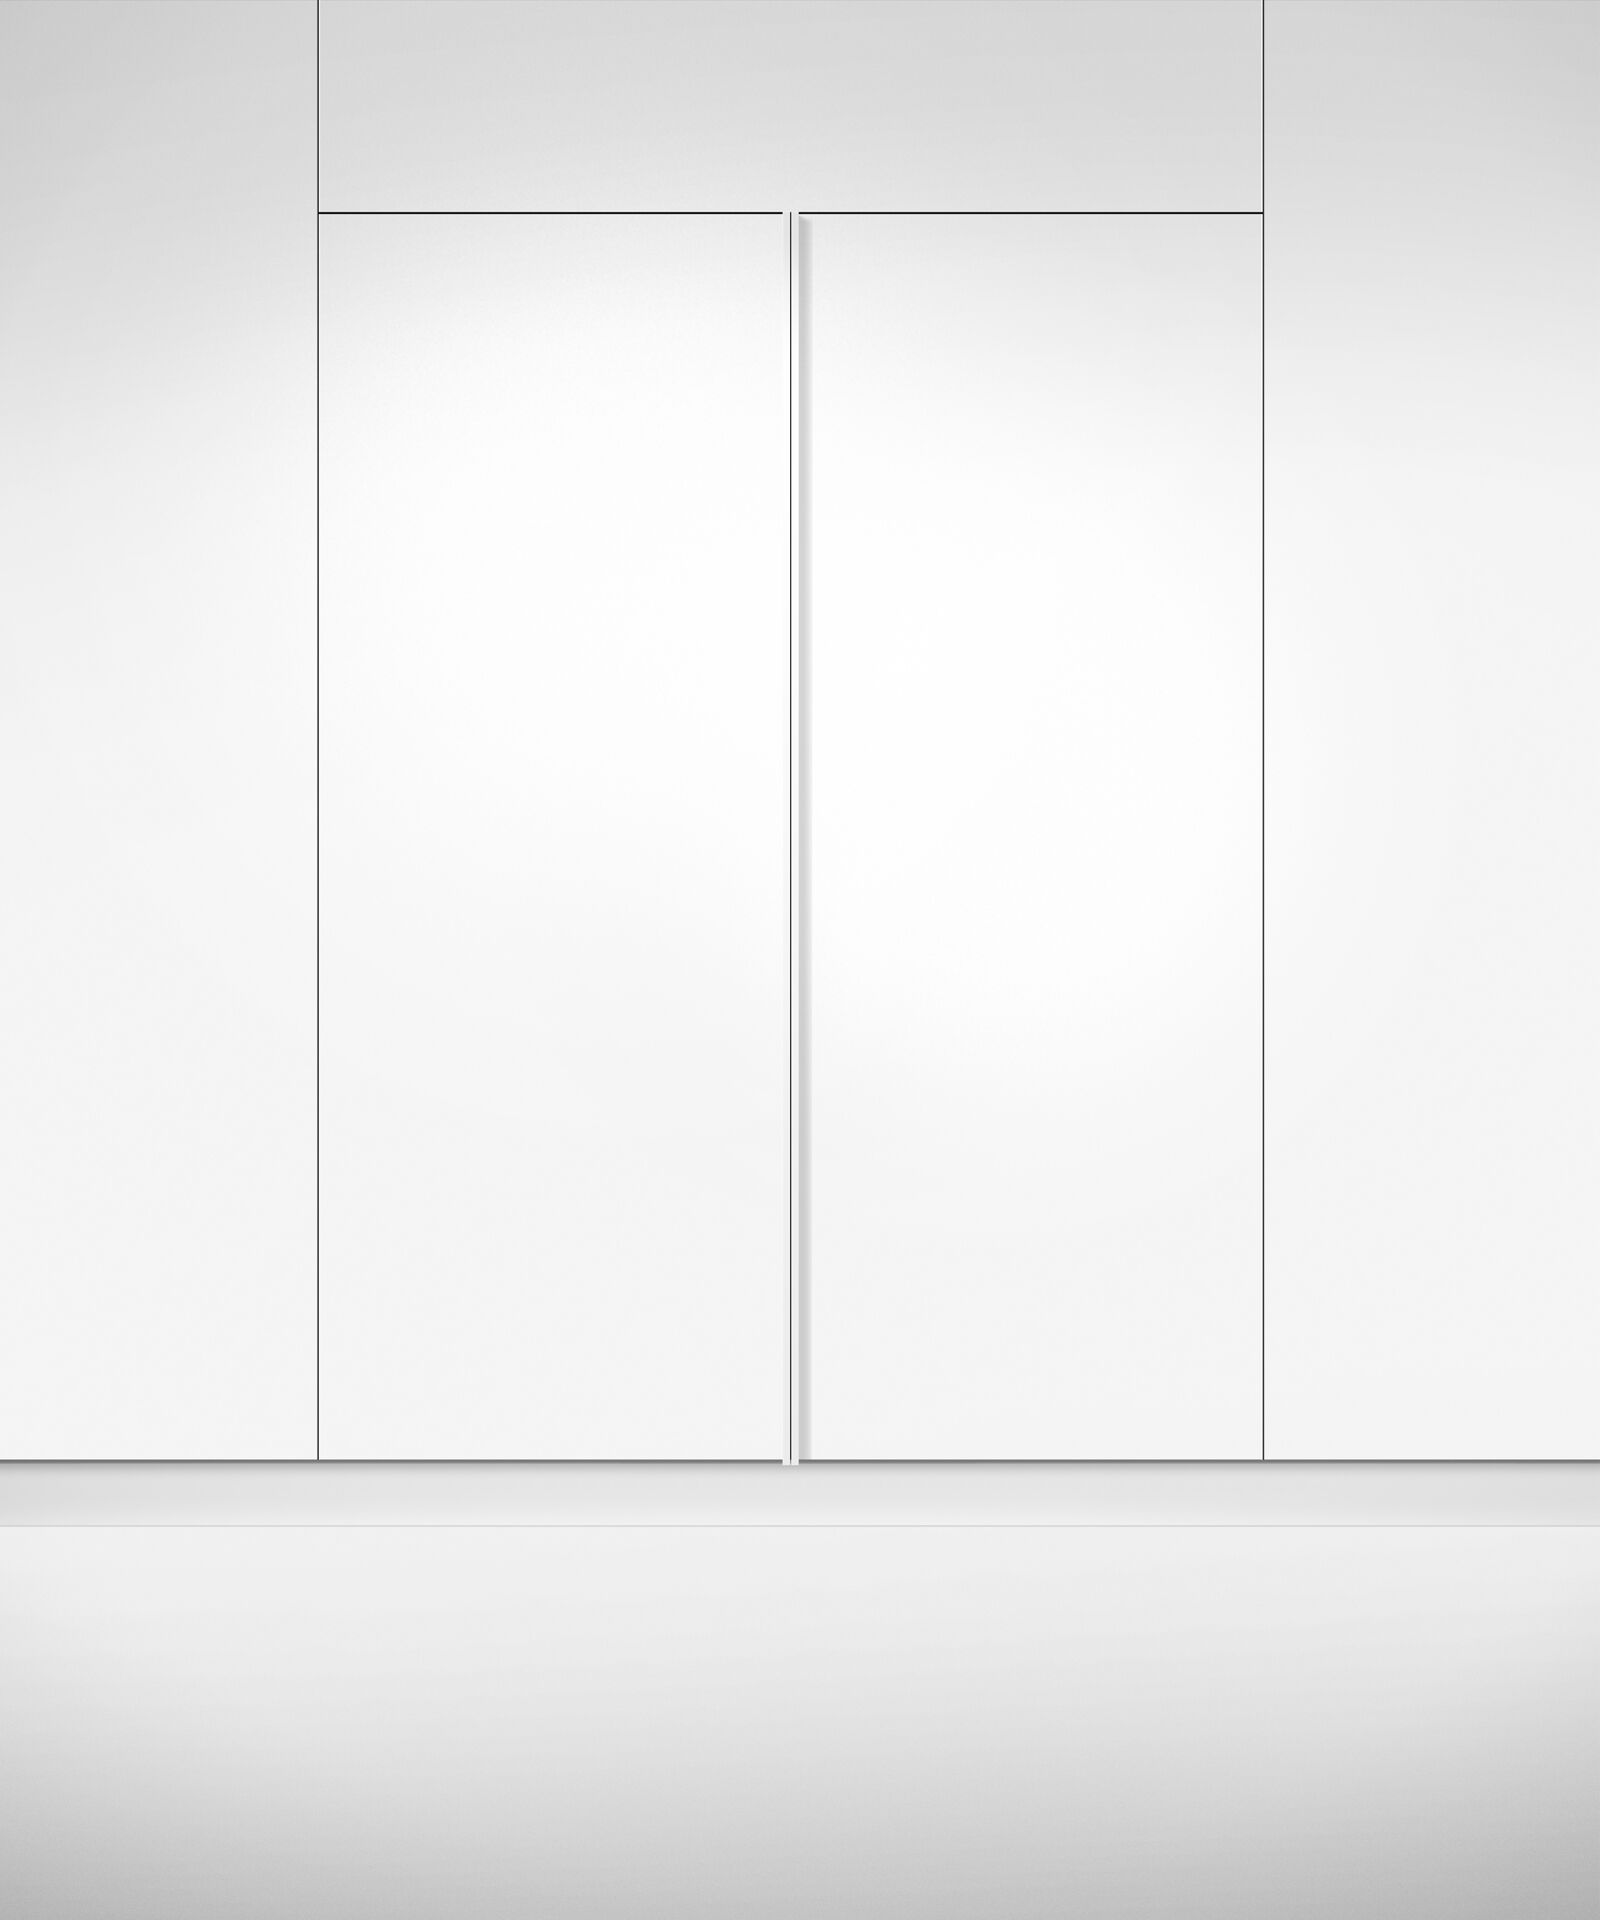 嵌入式立式冷凍櫃, 76cm, 自動製冰 gallery image 8.0